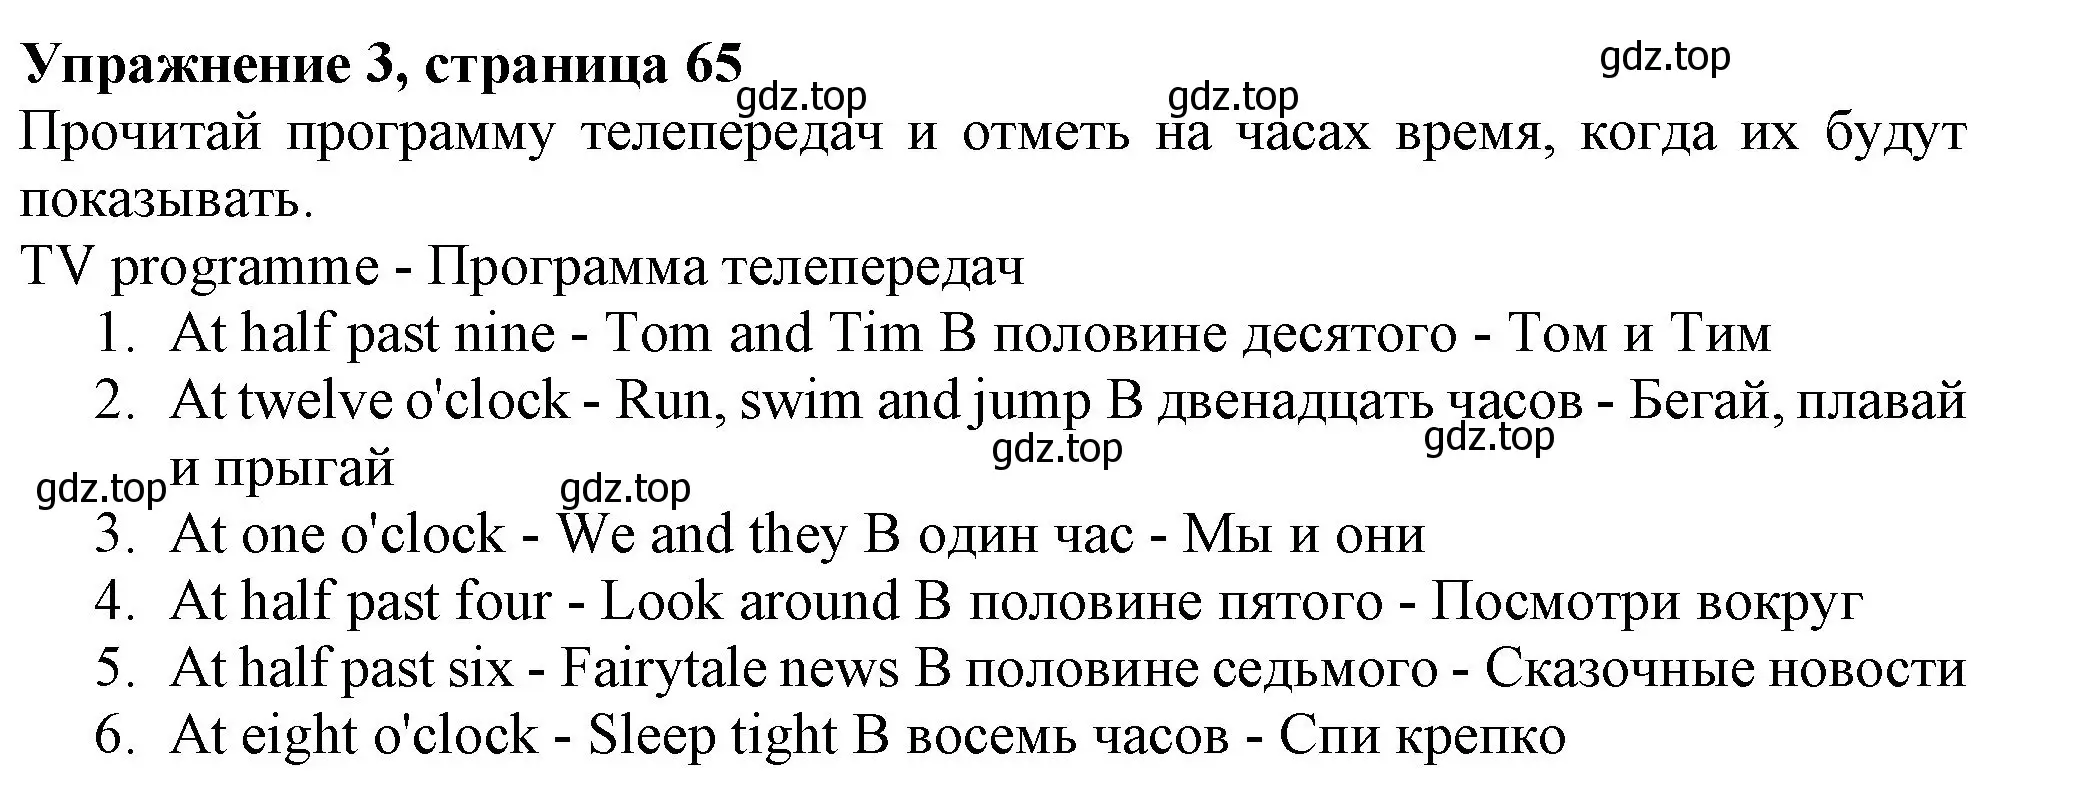 Решение номер 3 (страница 65) гдз по английскому языку 3 класс Биболетова, Денисенко, рабочая тетрадь